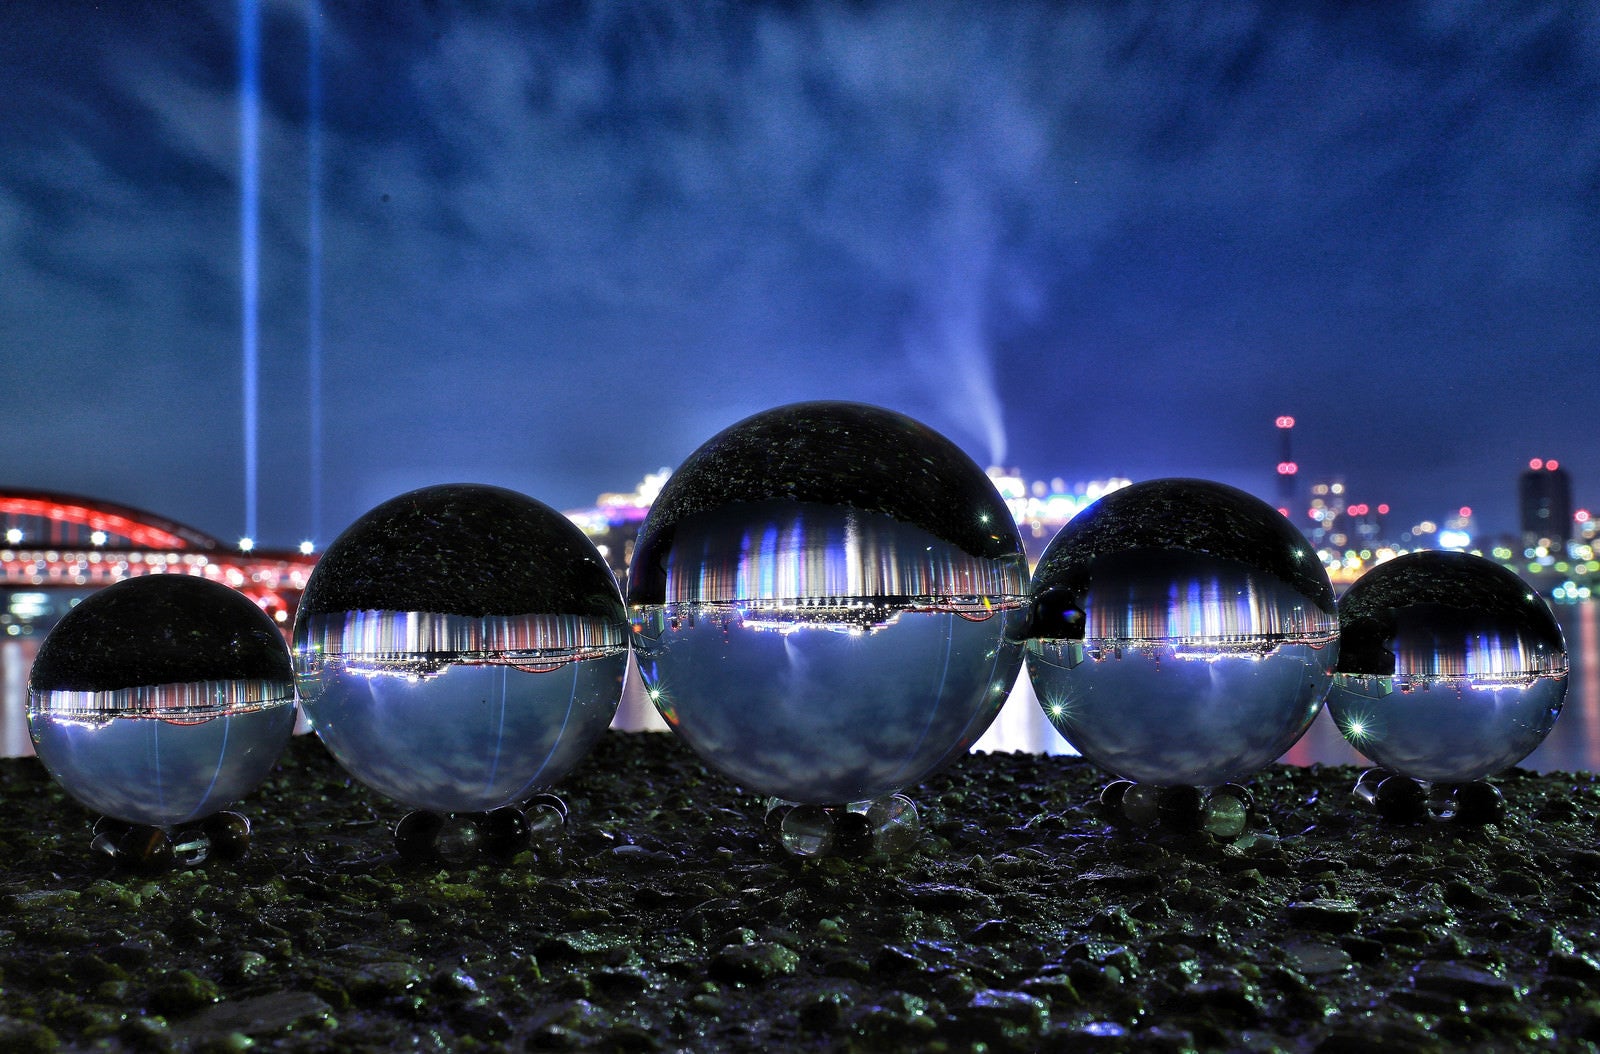 「水晶球から見る夜の旅客船」の写真